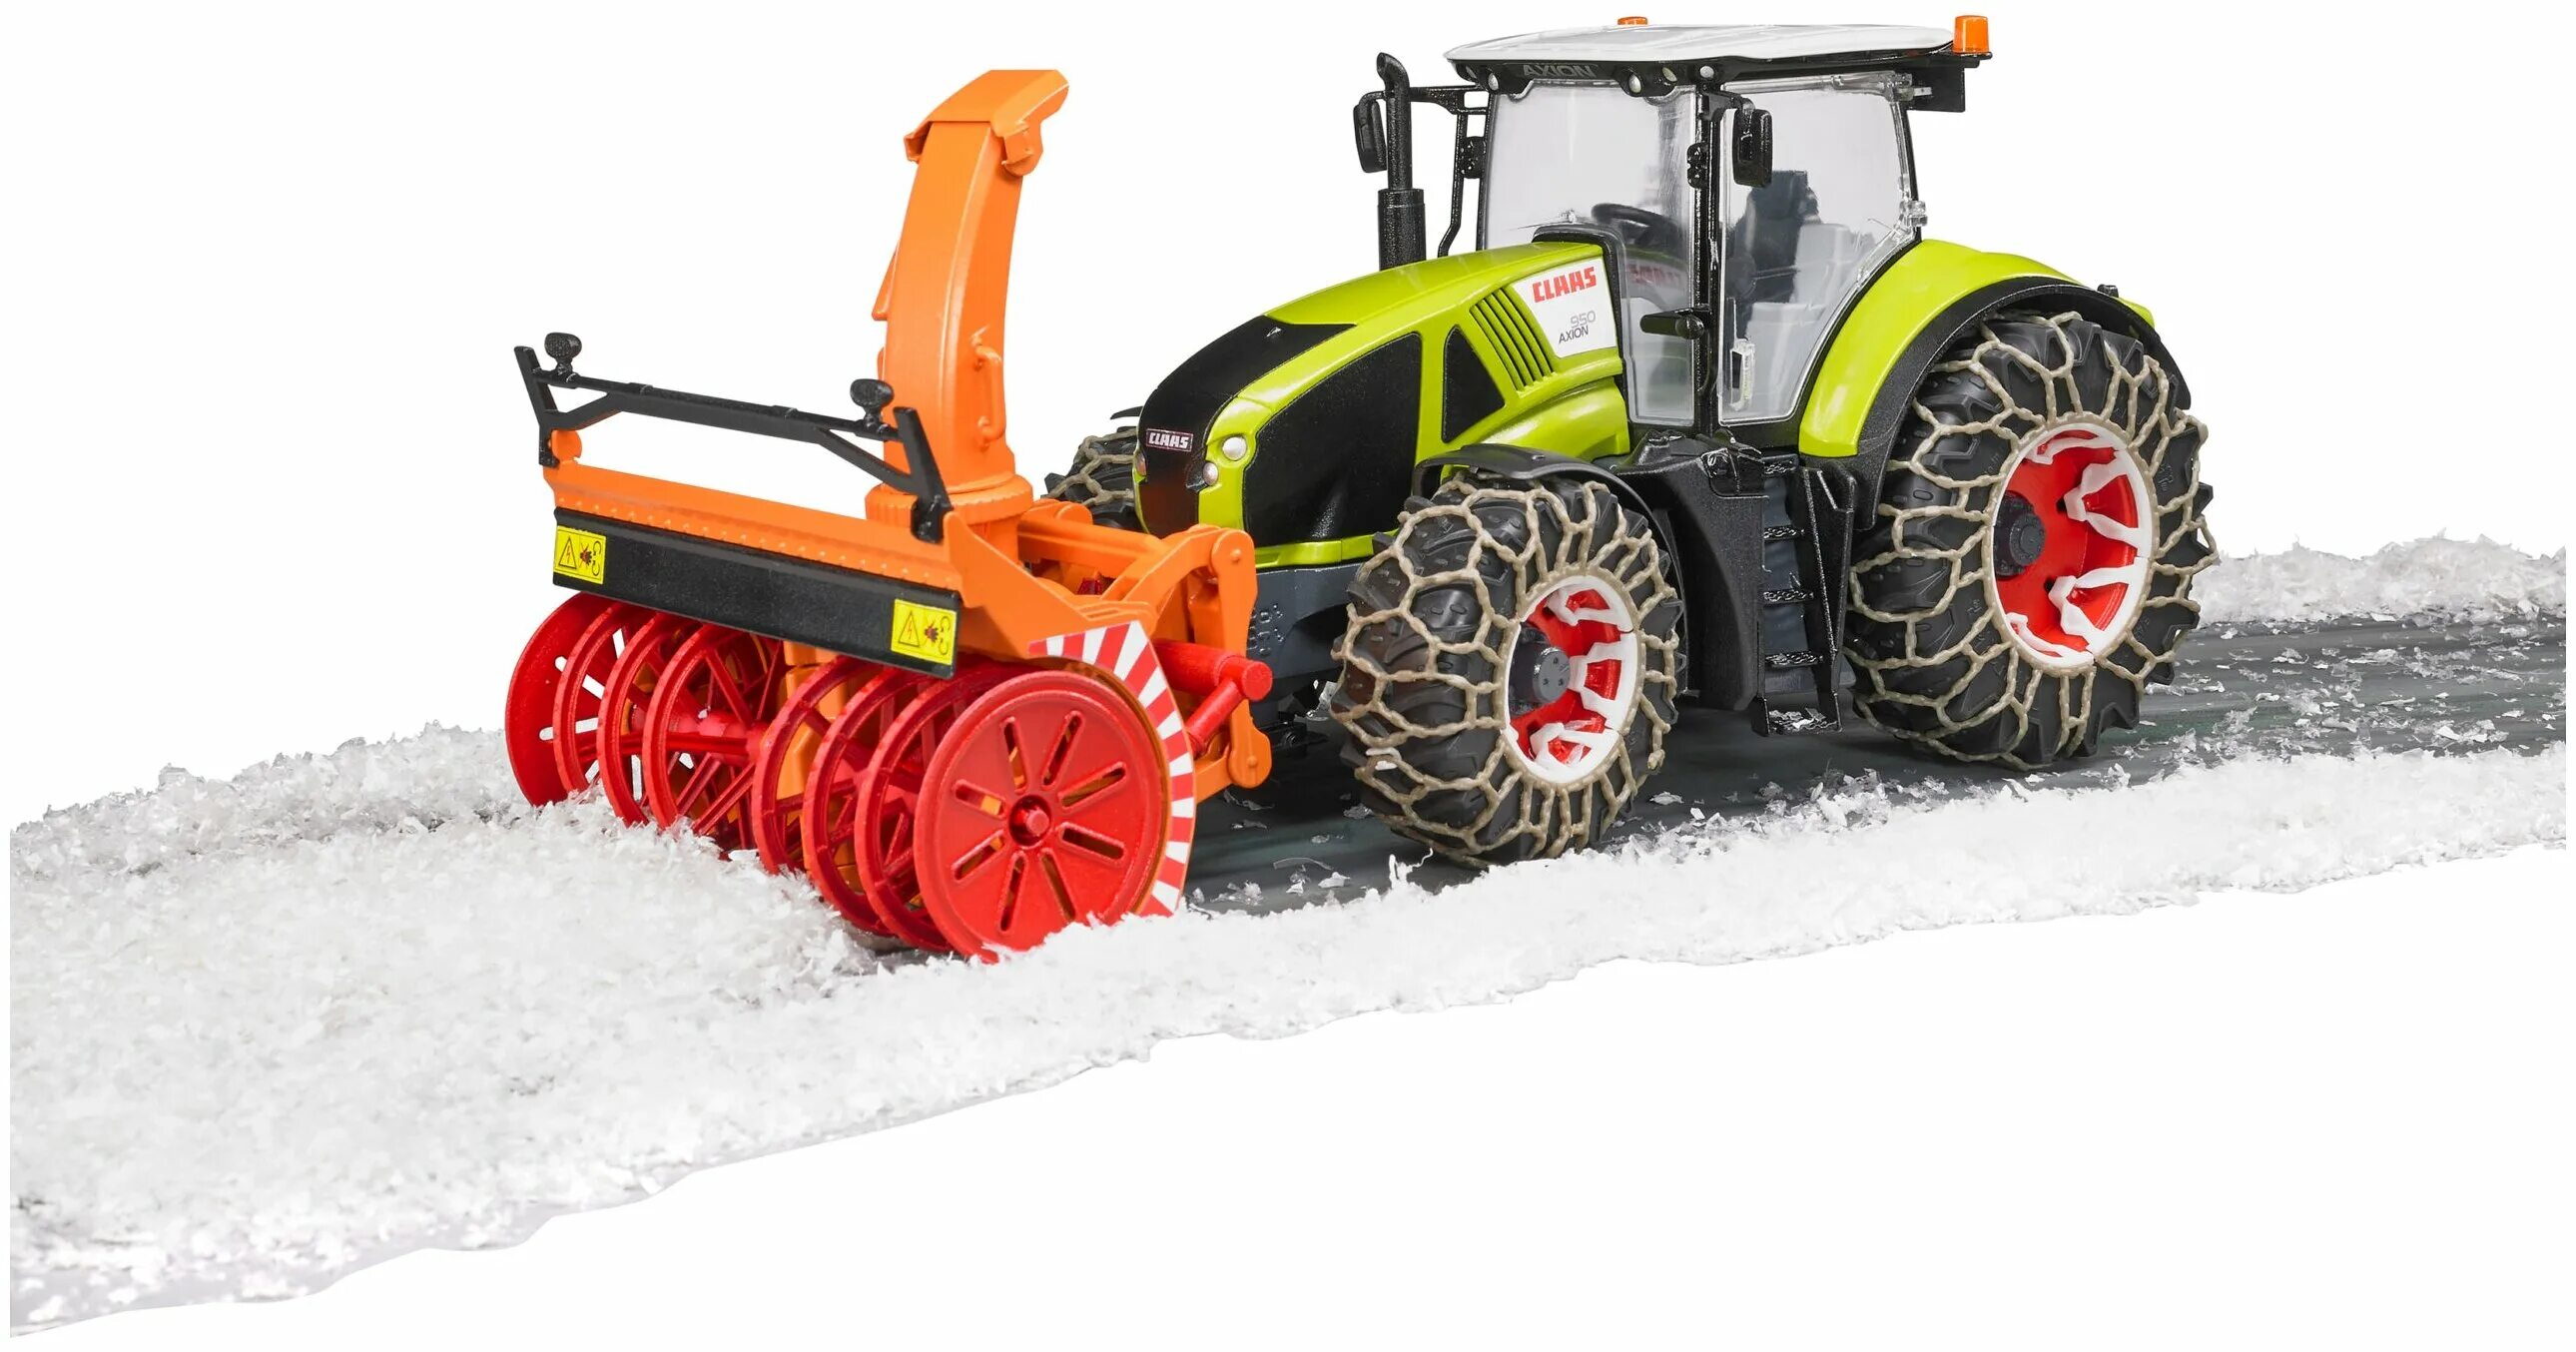 Купить снегоуборочный трактор. Трактор Axion 950. Трактор CLAAS Axion 950 c цепями и снегоочистителем. Bruder трактор CLAAS Axion 950 c цепями и снегоочистителем. Снегоочиститель Bruder 02349.